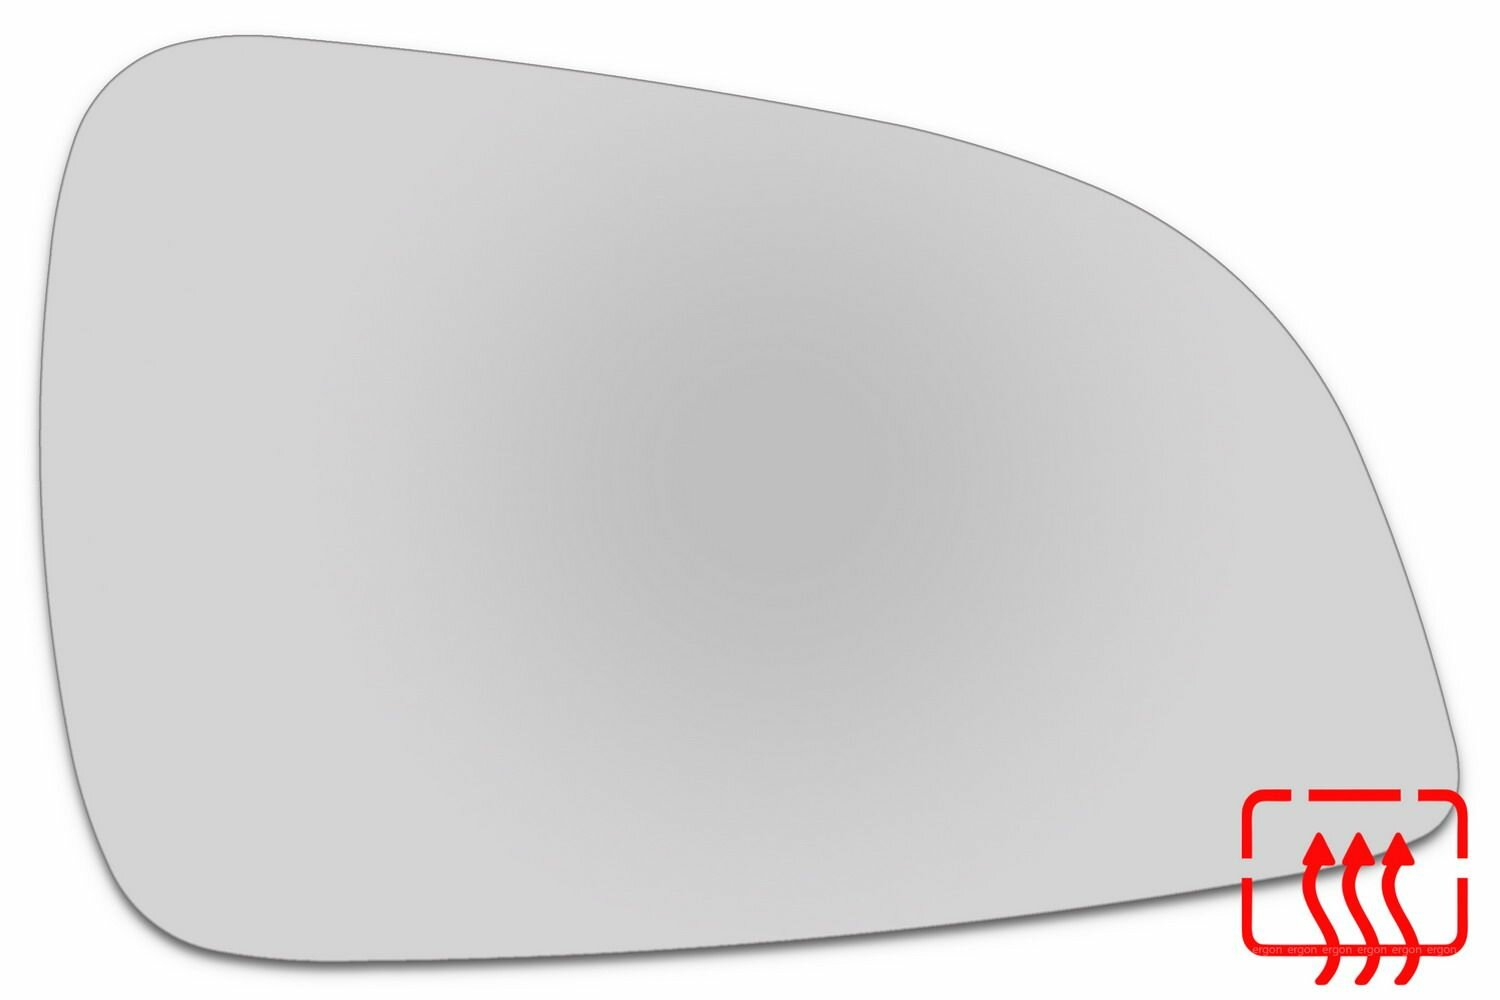 Зеркальный элемент правый OPEL Astra H (10-15) сфера нейтральный с обогревом. Размер зеркального элемента по центральной оси: высота -115 мм, длина - 177 мм.